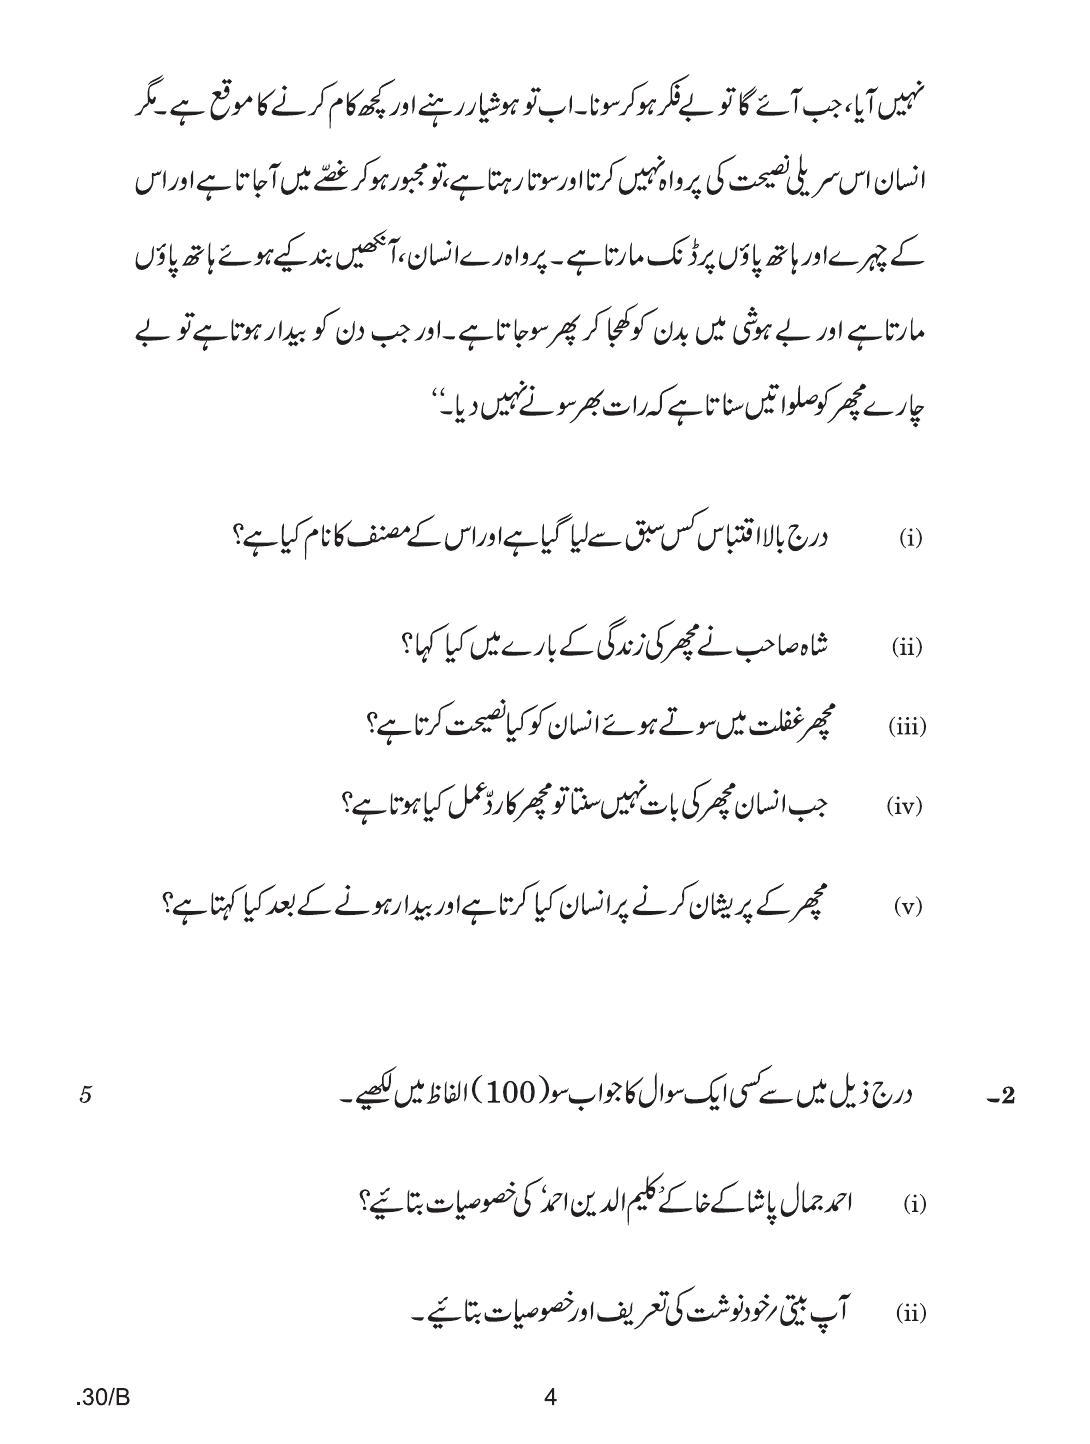 CBSE Class 12 Urdu Elective 2020 Compartment Question Paper - Page 4